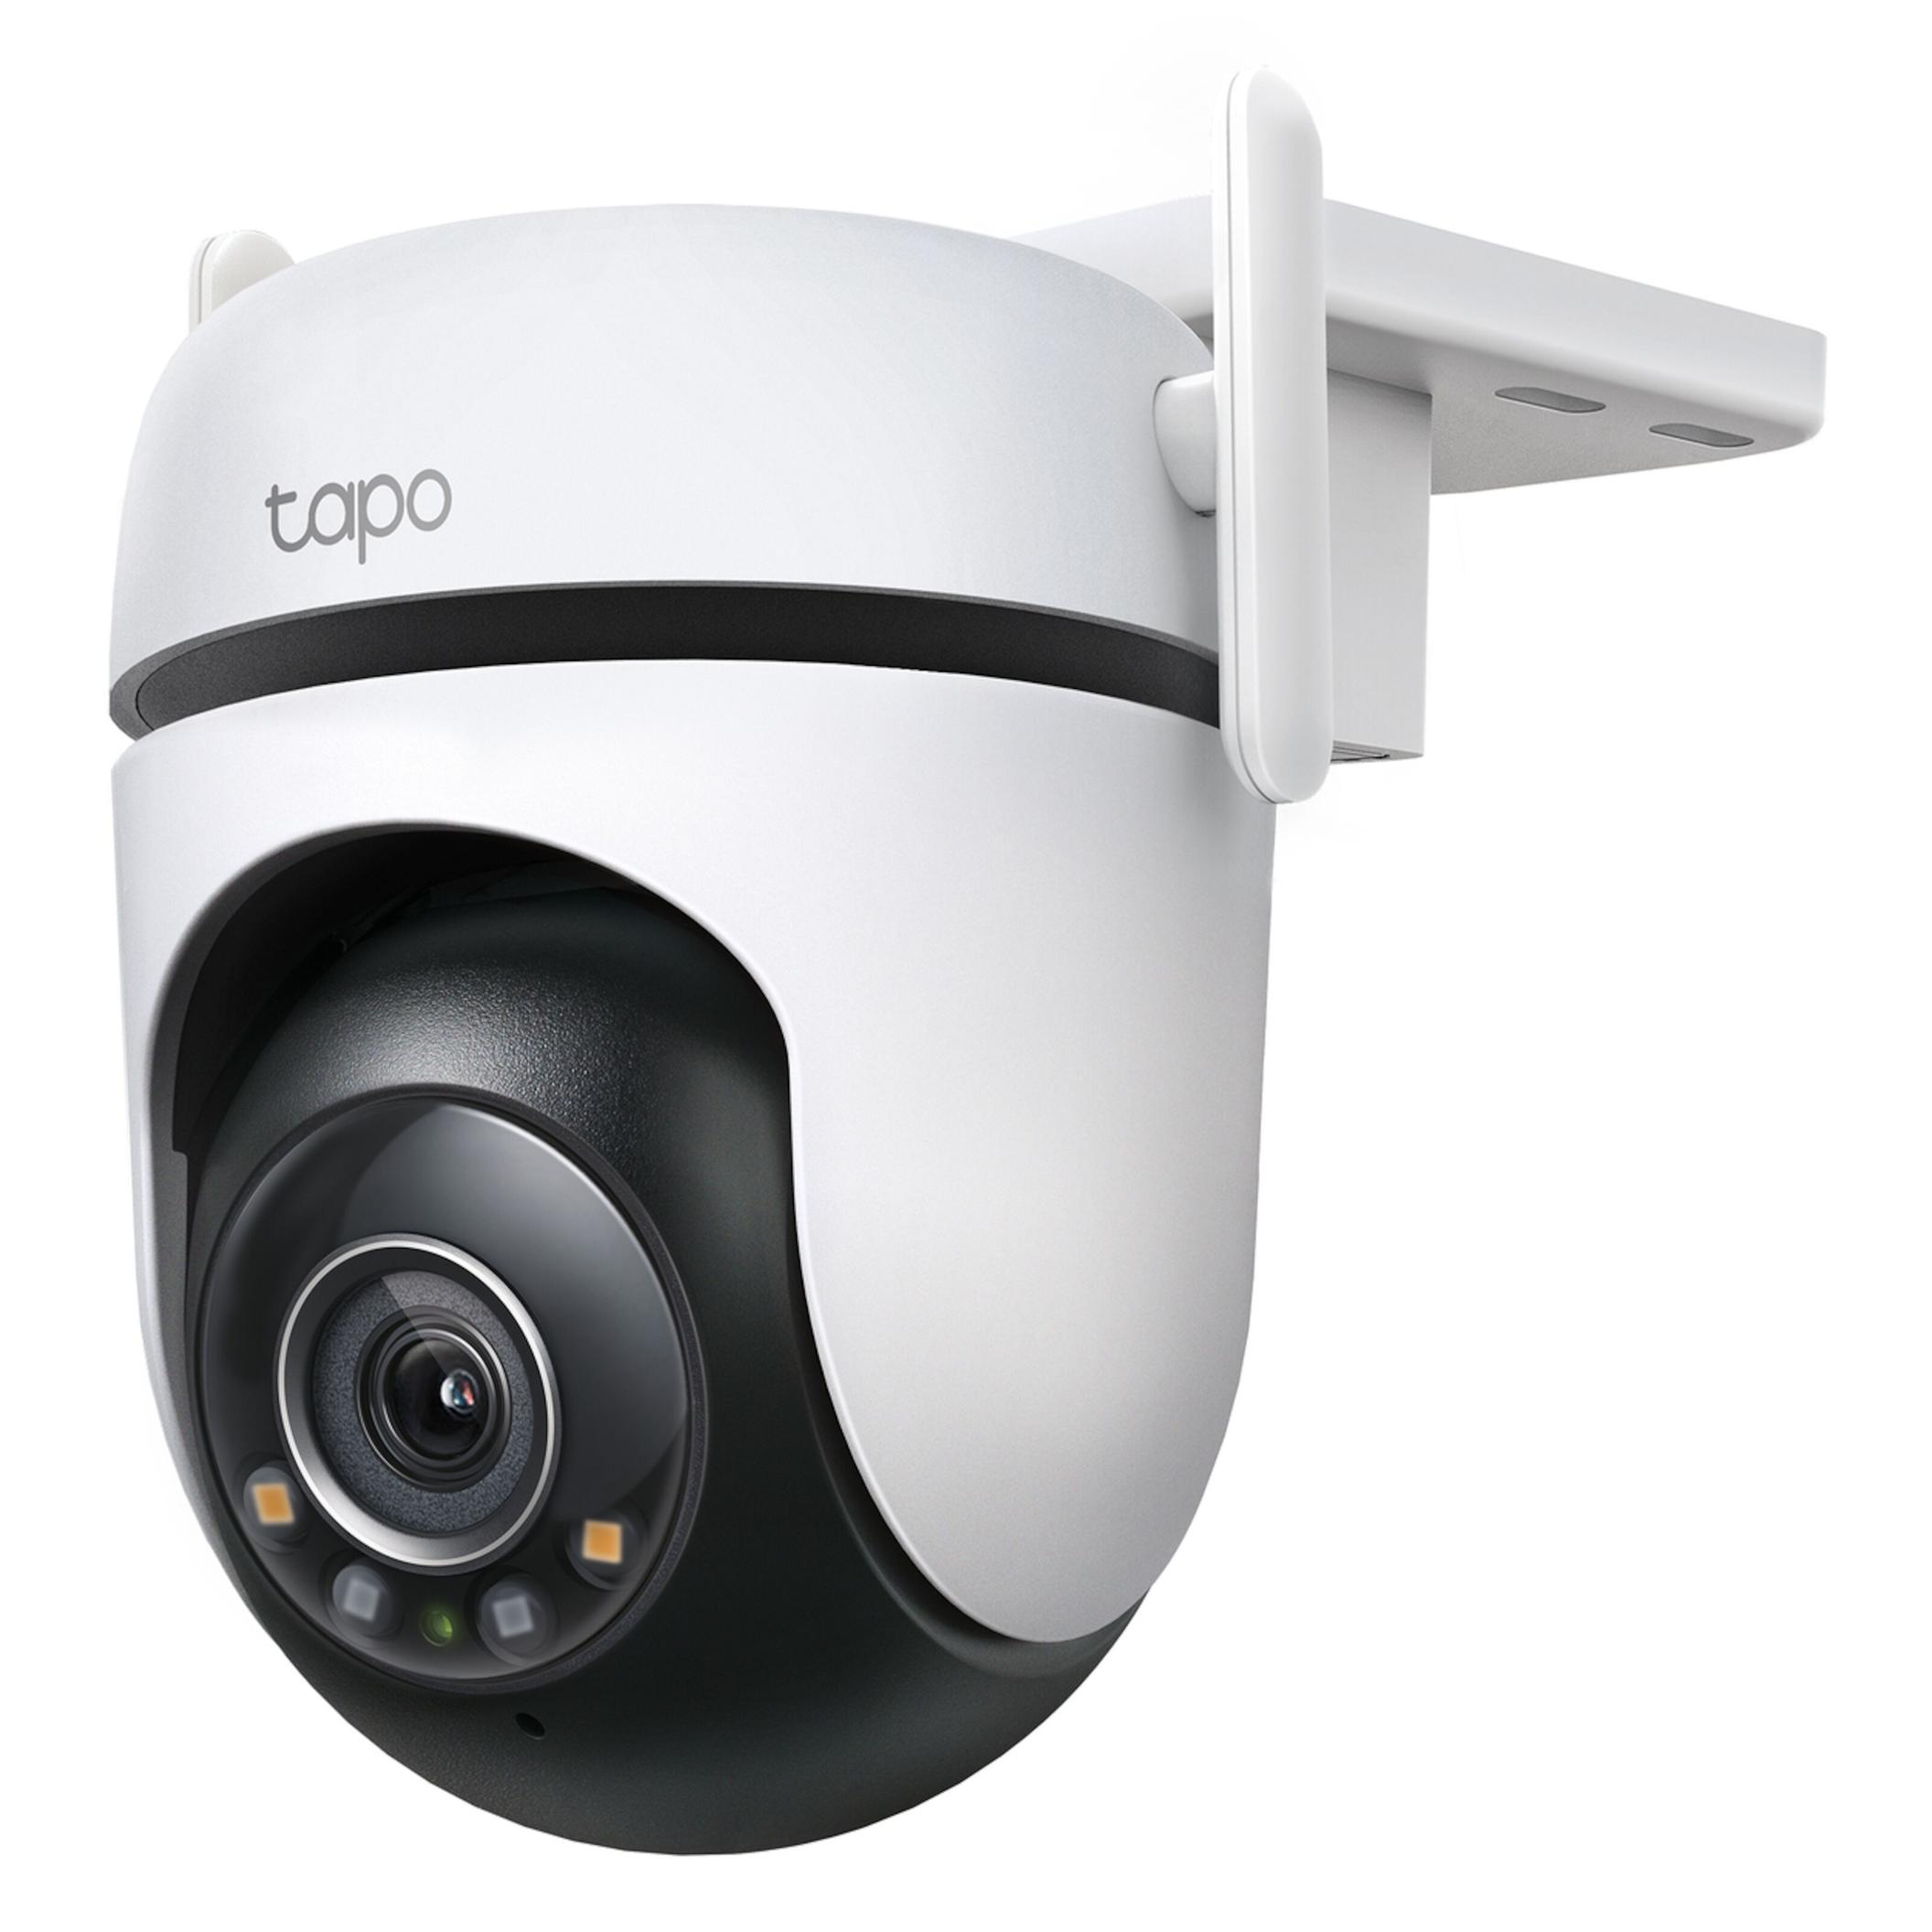 Tapo C520WS Trådlös övervakningskamera för 799 kr på Kjell & Company